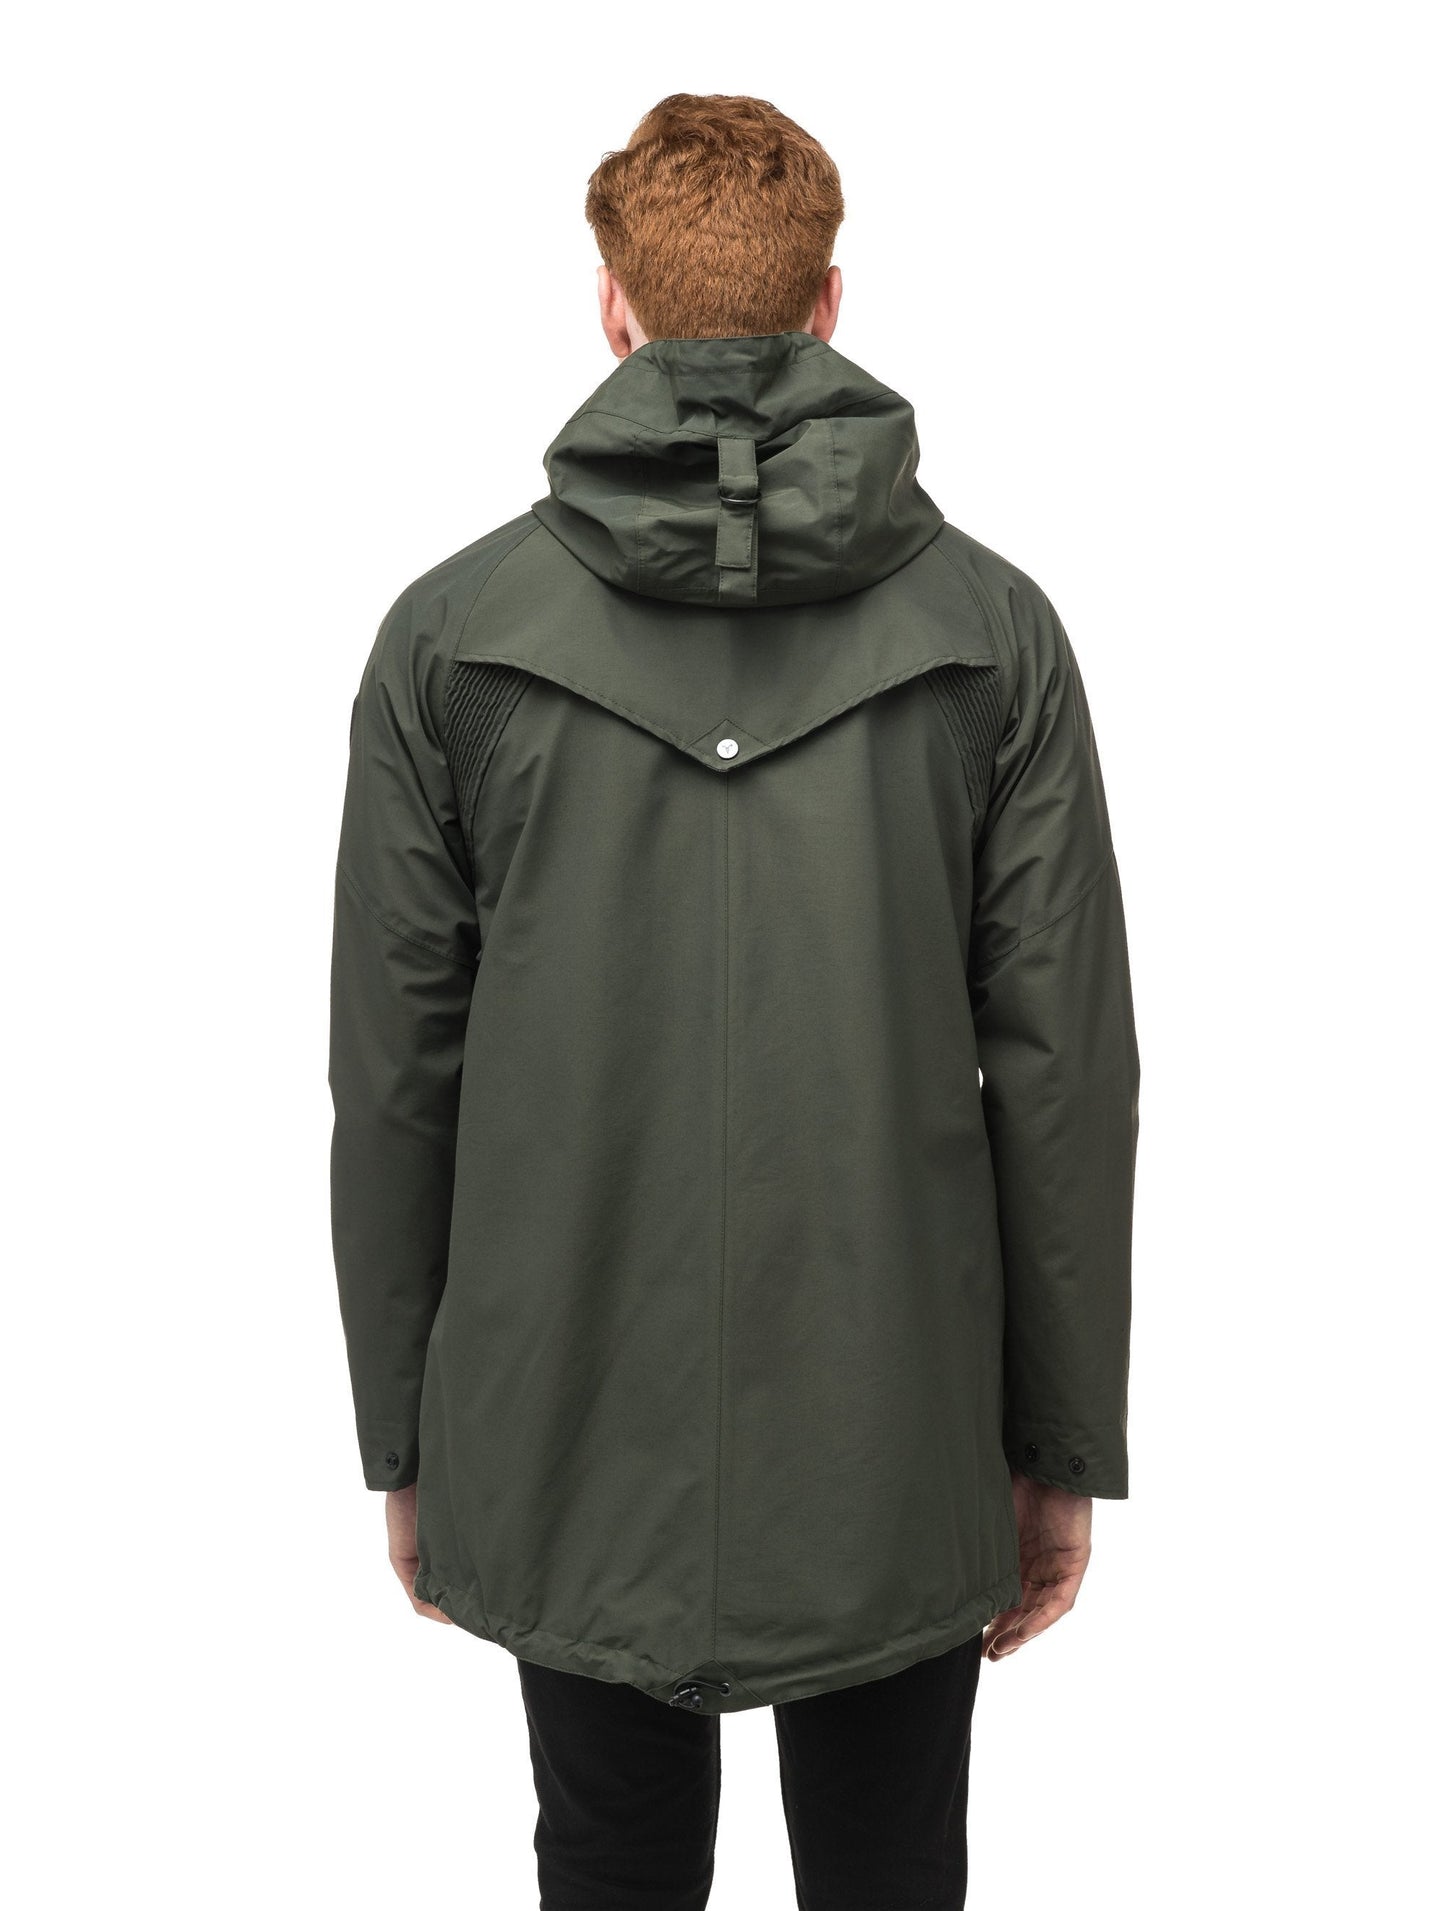 Men's hooded rain coat with hood in Dark Forest